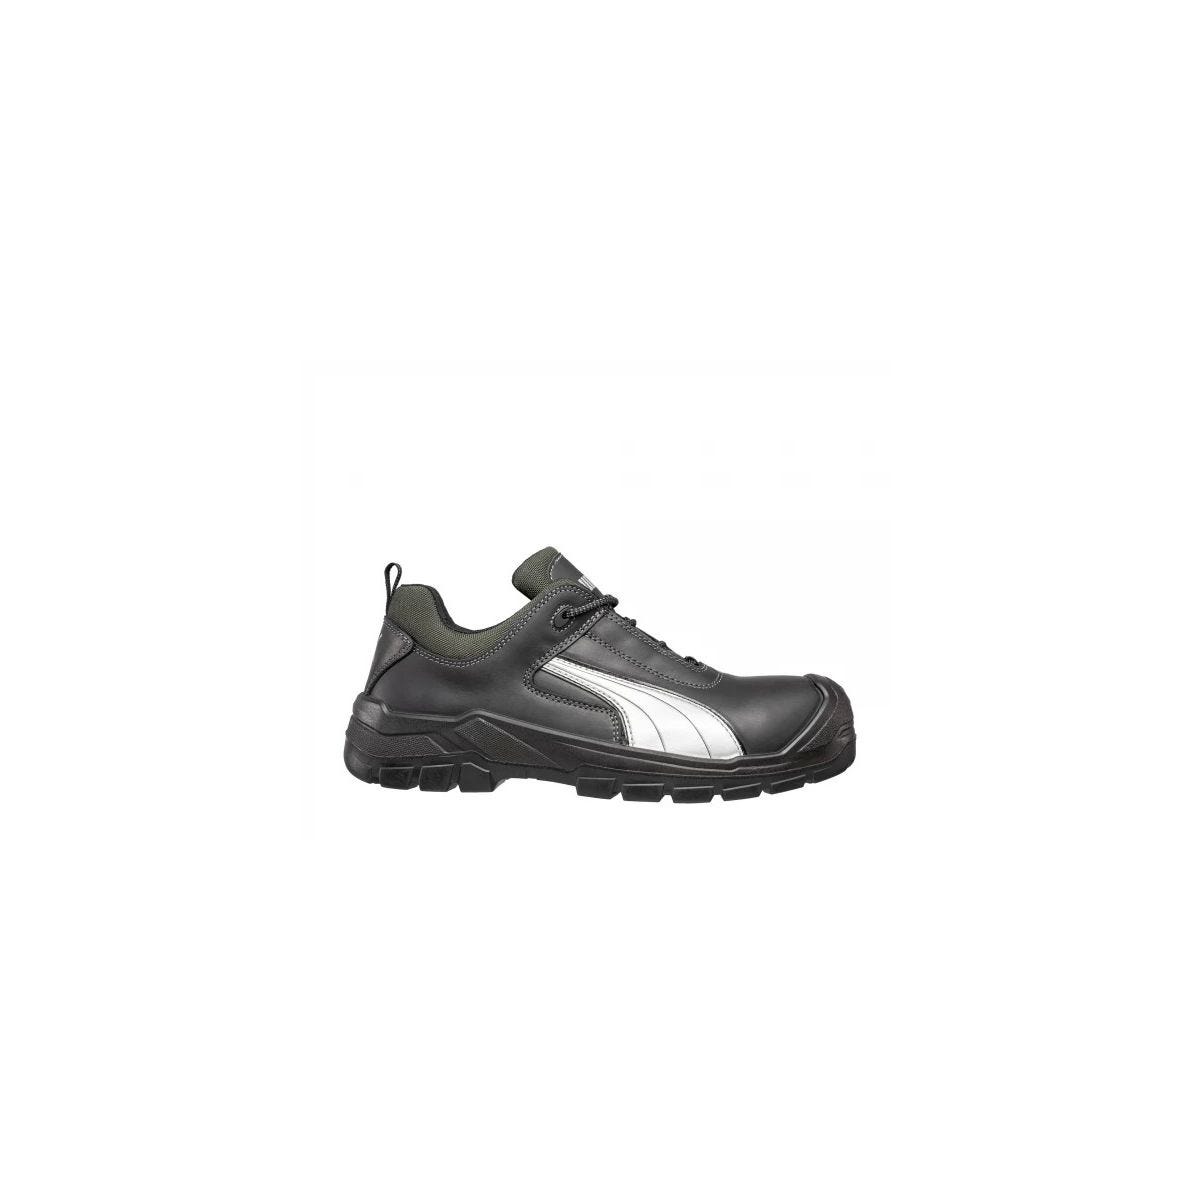 Chaussures de sécurité Cascades low S3 HRO SRC - Puma - Taille 39 0